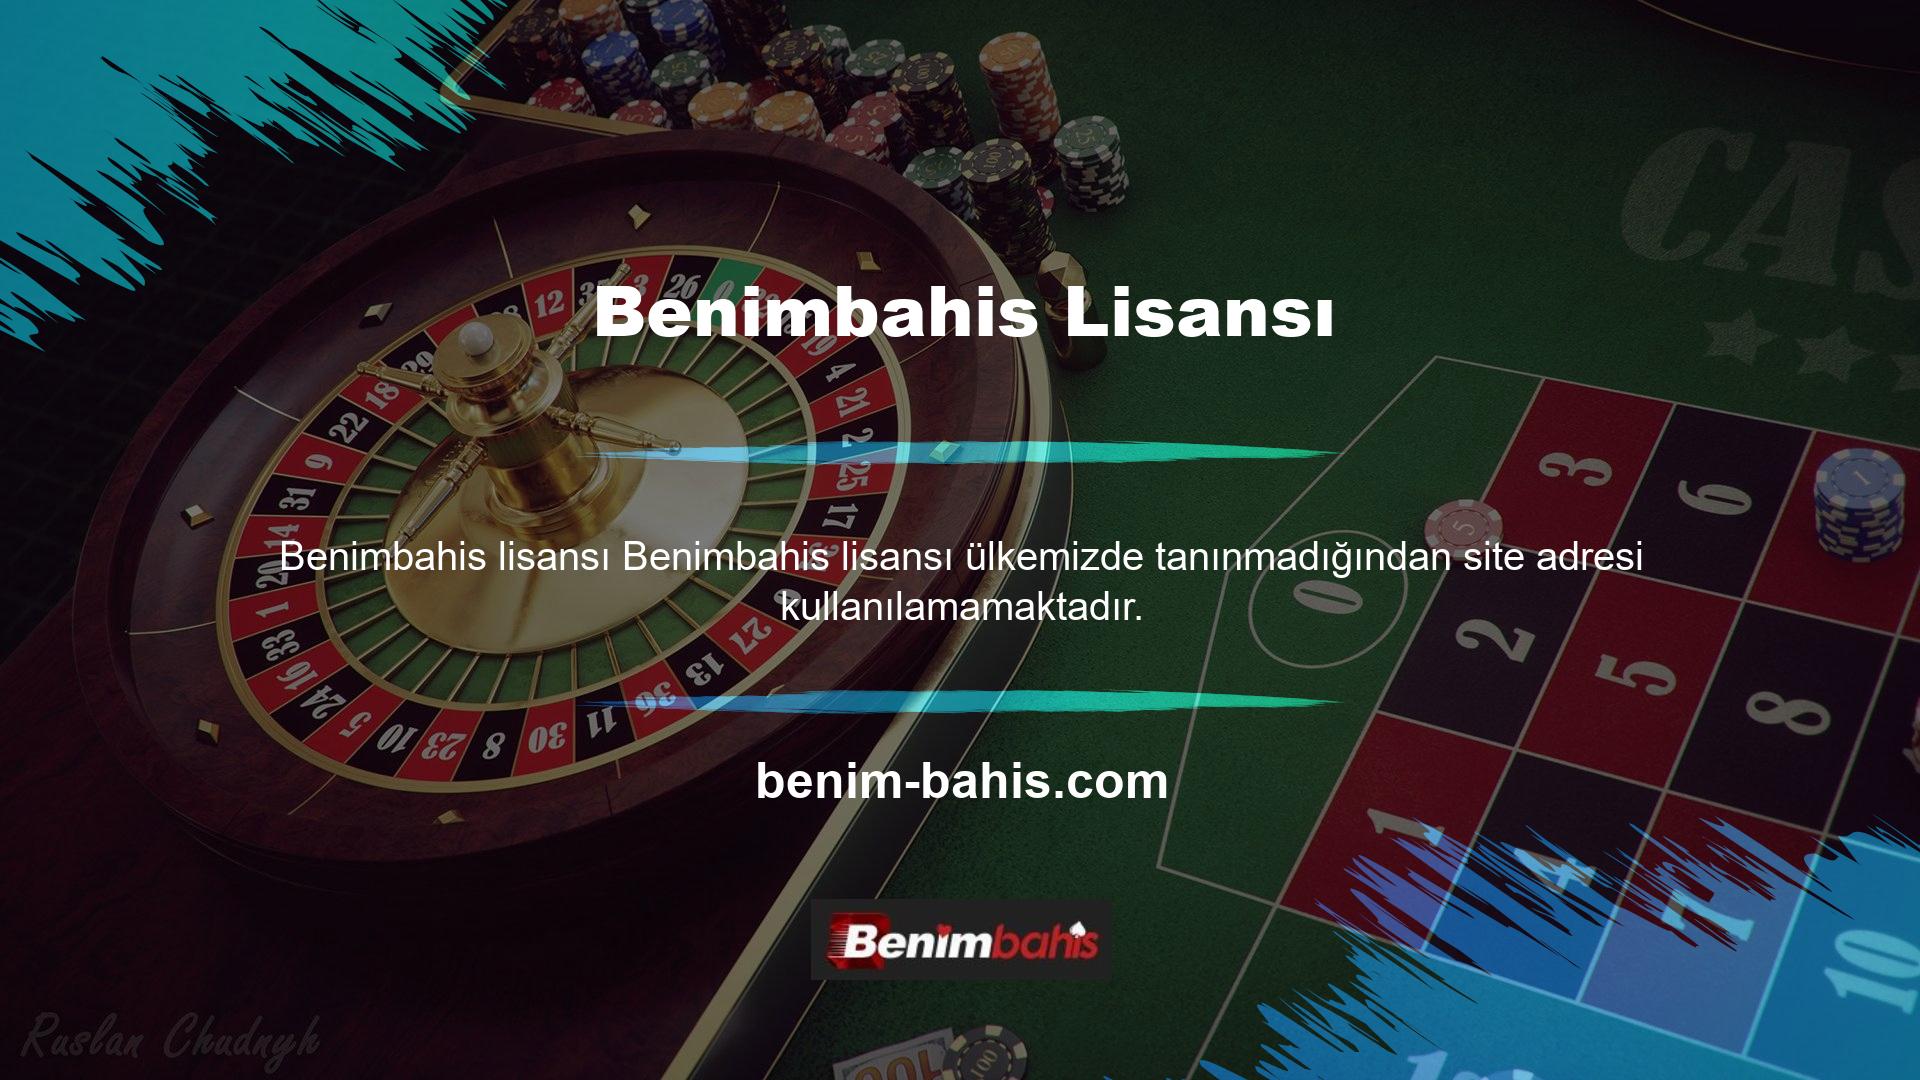 Türkiye’deki casino yasağı ve ülke dışındaki casino sitelerine vergi ödenmemesi bu sitelerin kapatılmasına neden olmuştur